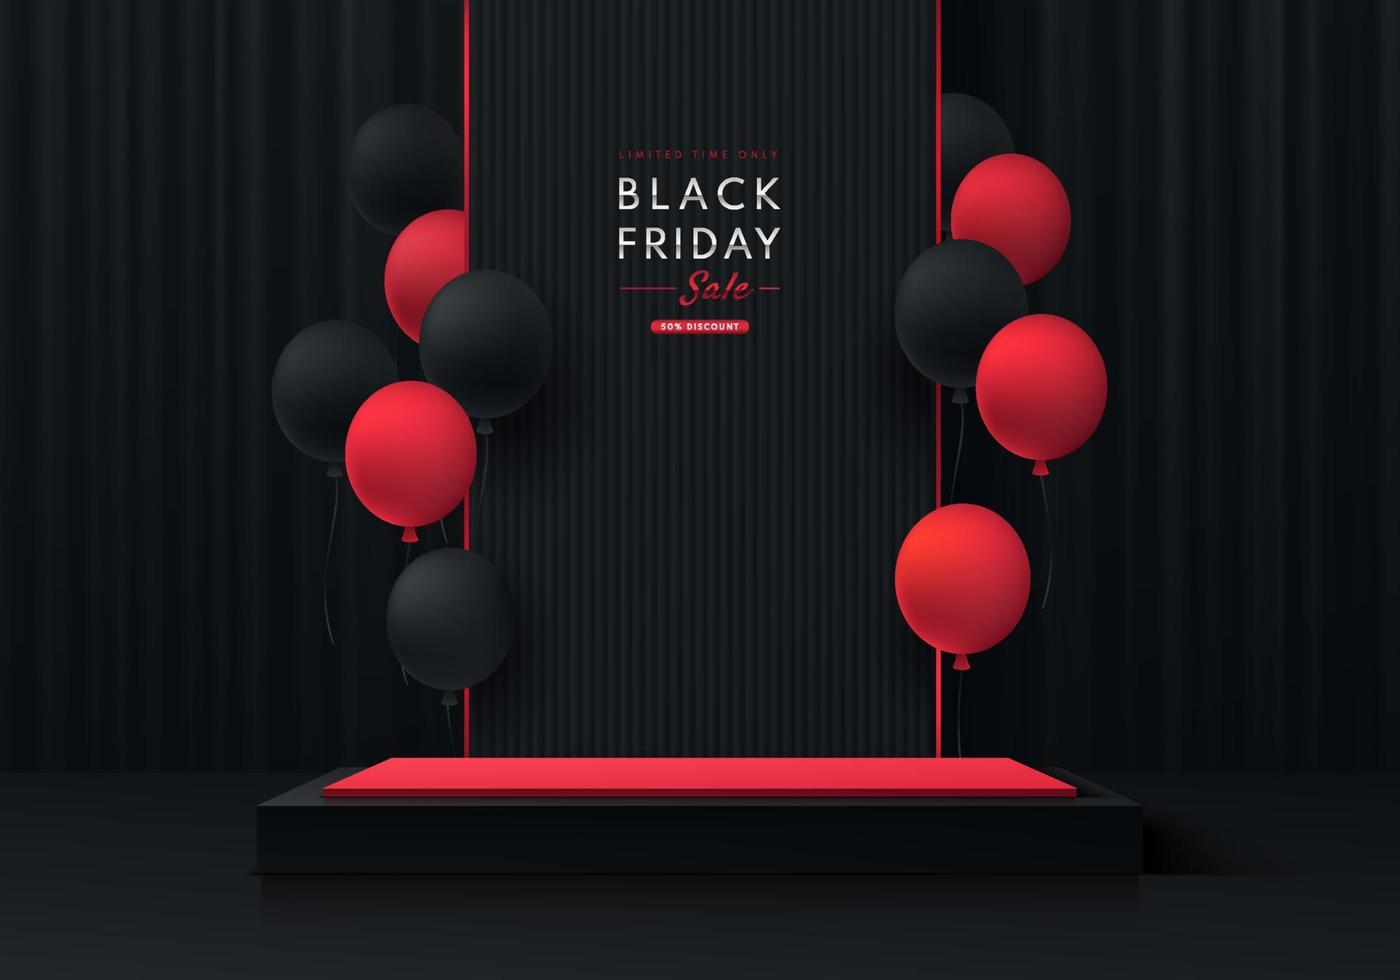 Podio de pedestal de caja de cubo rojo y negro 3d realista con fondo de cortina negra y globos rojos. concepto de venta de viernes negro, exhibición de escenario de productos de escena mínima abstracta de vector, exhibición de promoción. vector